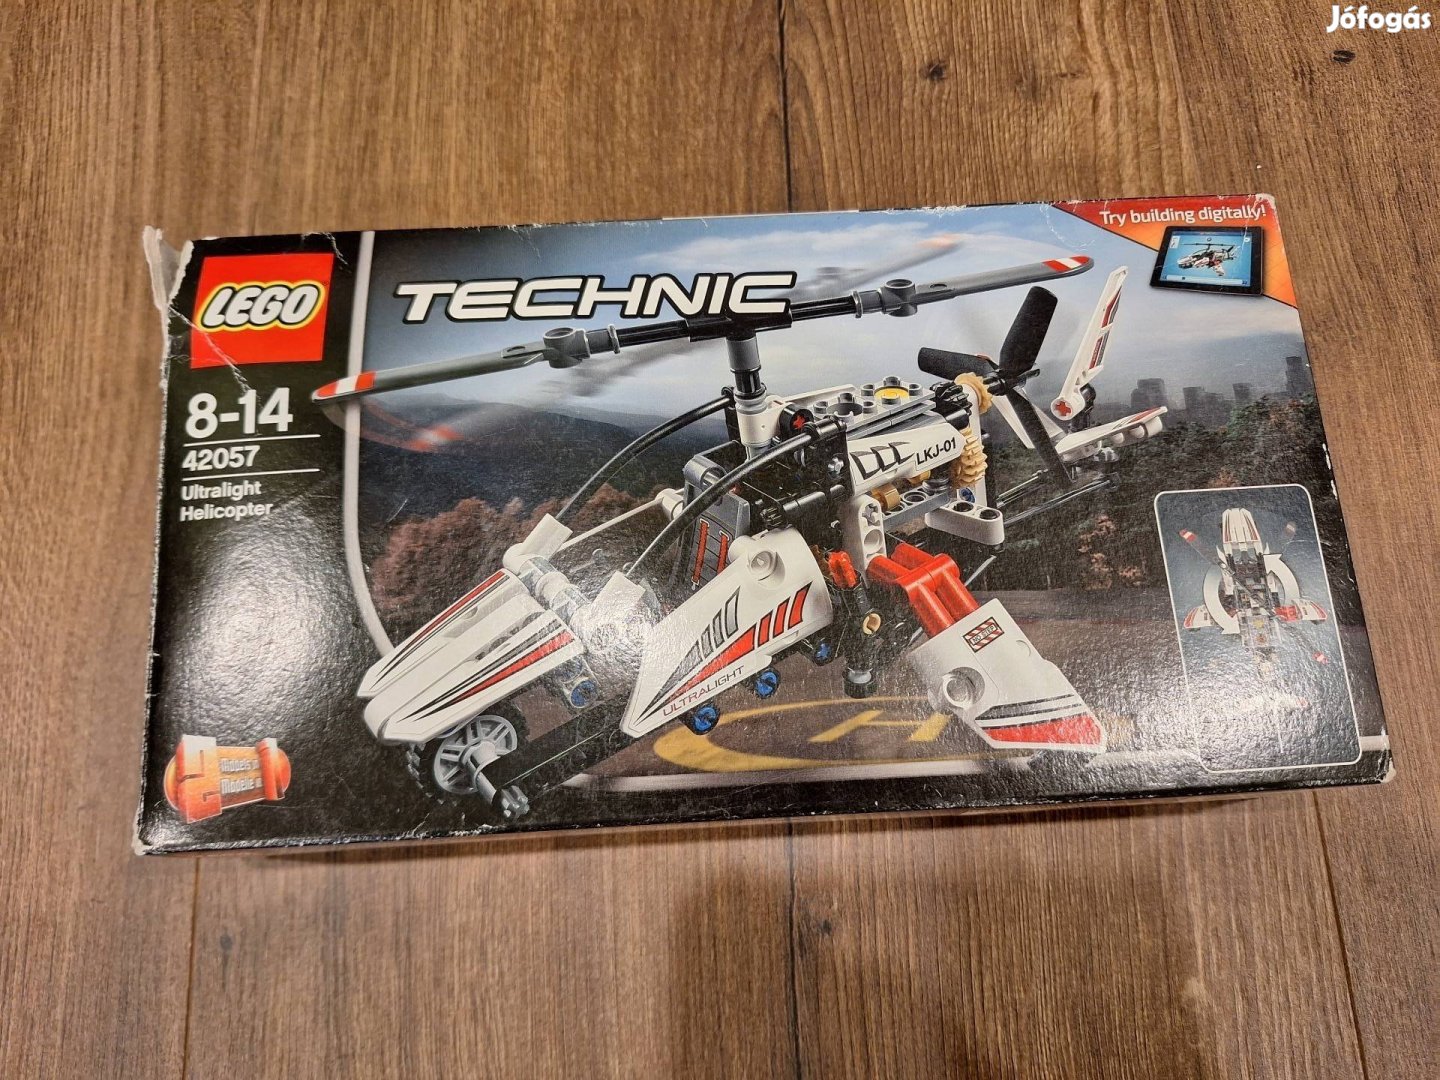 Lego Technic 42057 Ultrakönnyű helikopter, hiánytalan, ép